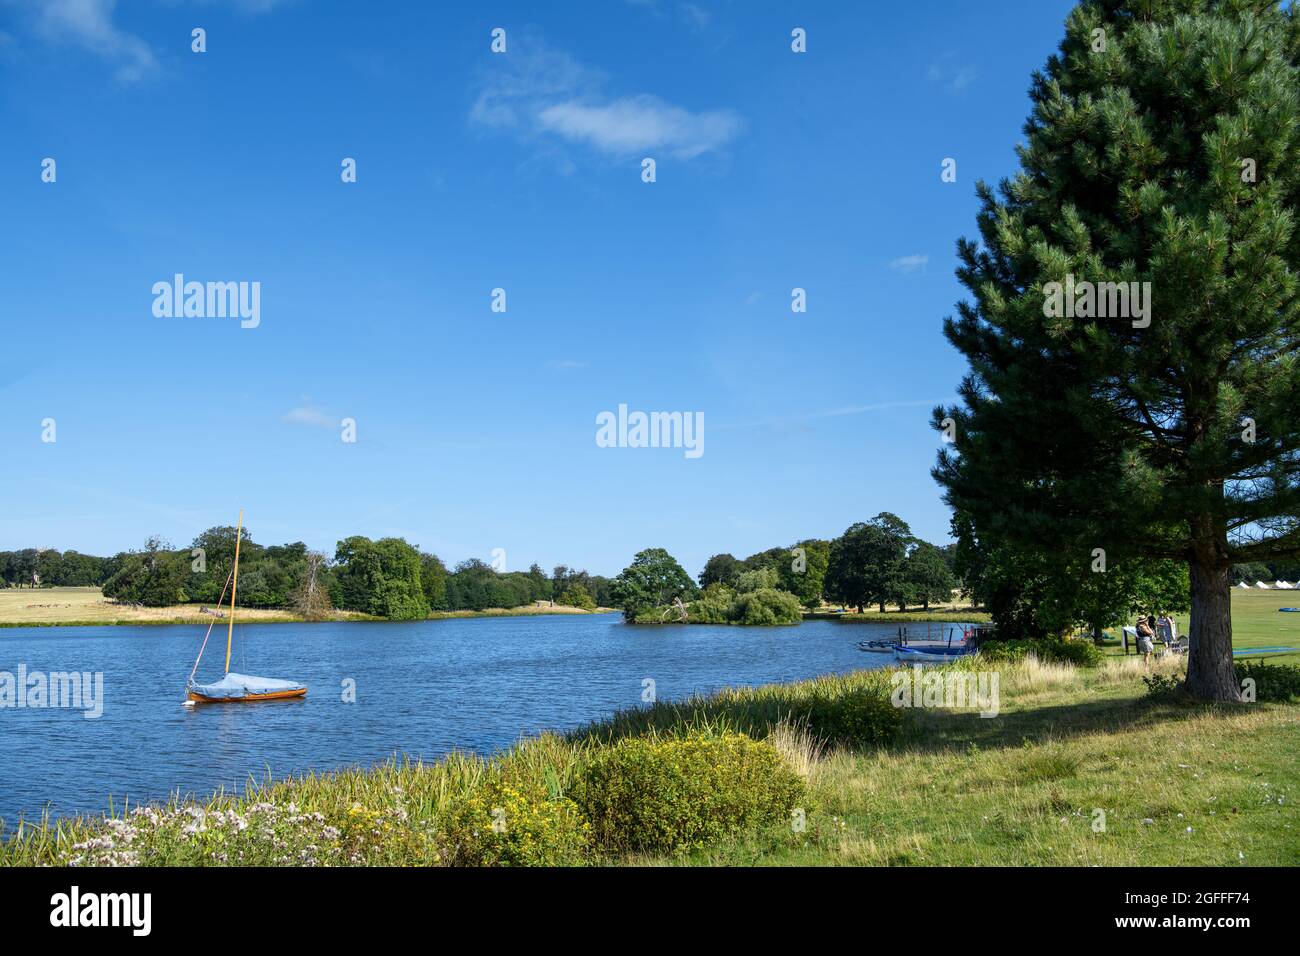 The Lake at Holkham Hall, Holkham, Norfolk, East Anglia, England, UK Stock Photo